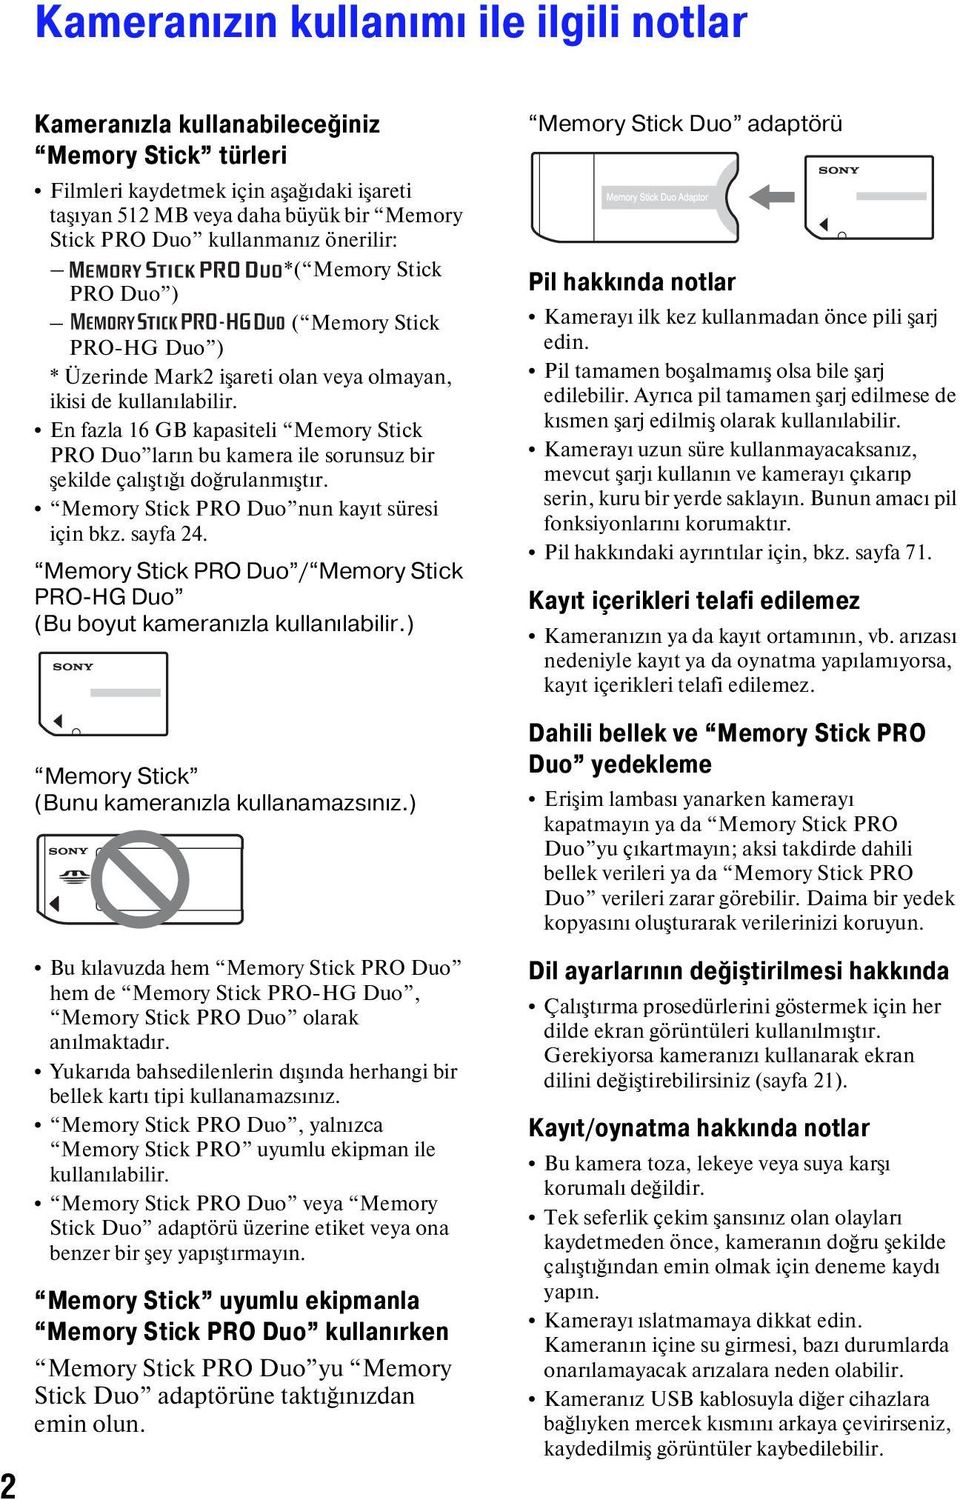 En fazla 16 GB kapasiteli Memory Stick PRO Duo ların bu kamera ile sorunsuz bir şekilde çalıştığı doğrulanmıştır. Memory Stick PRO Duo nun kayıt süresi için bkz. sayfa 24.